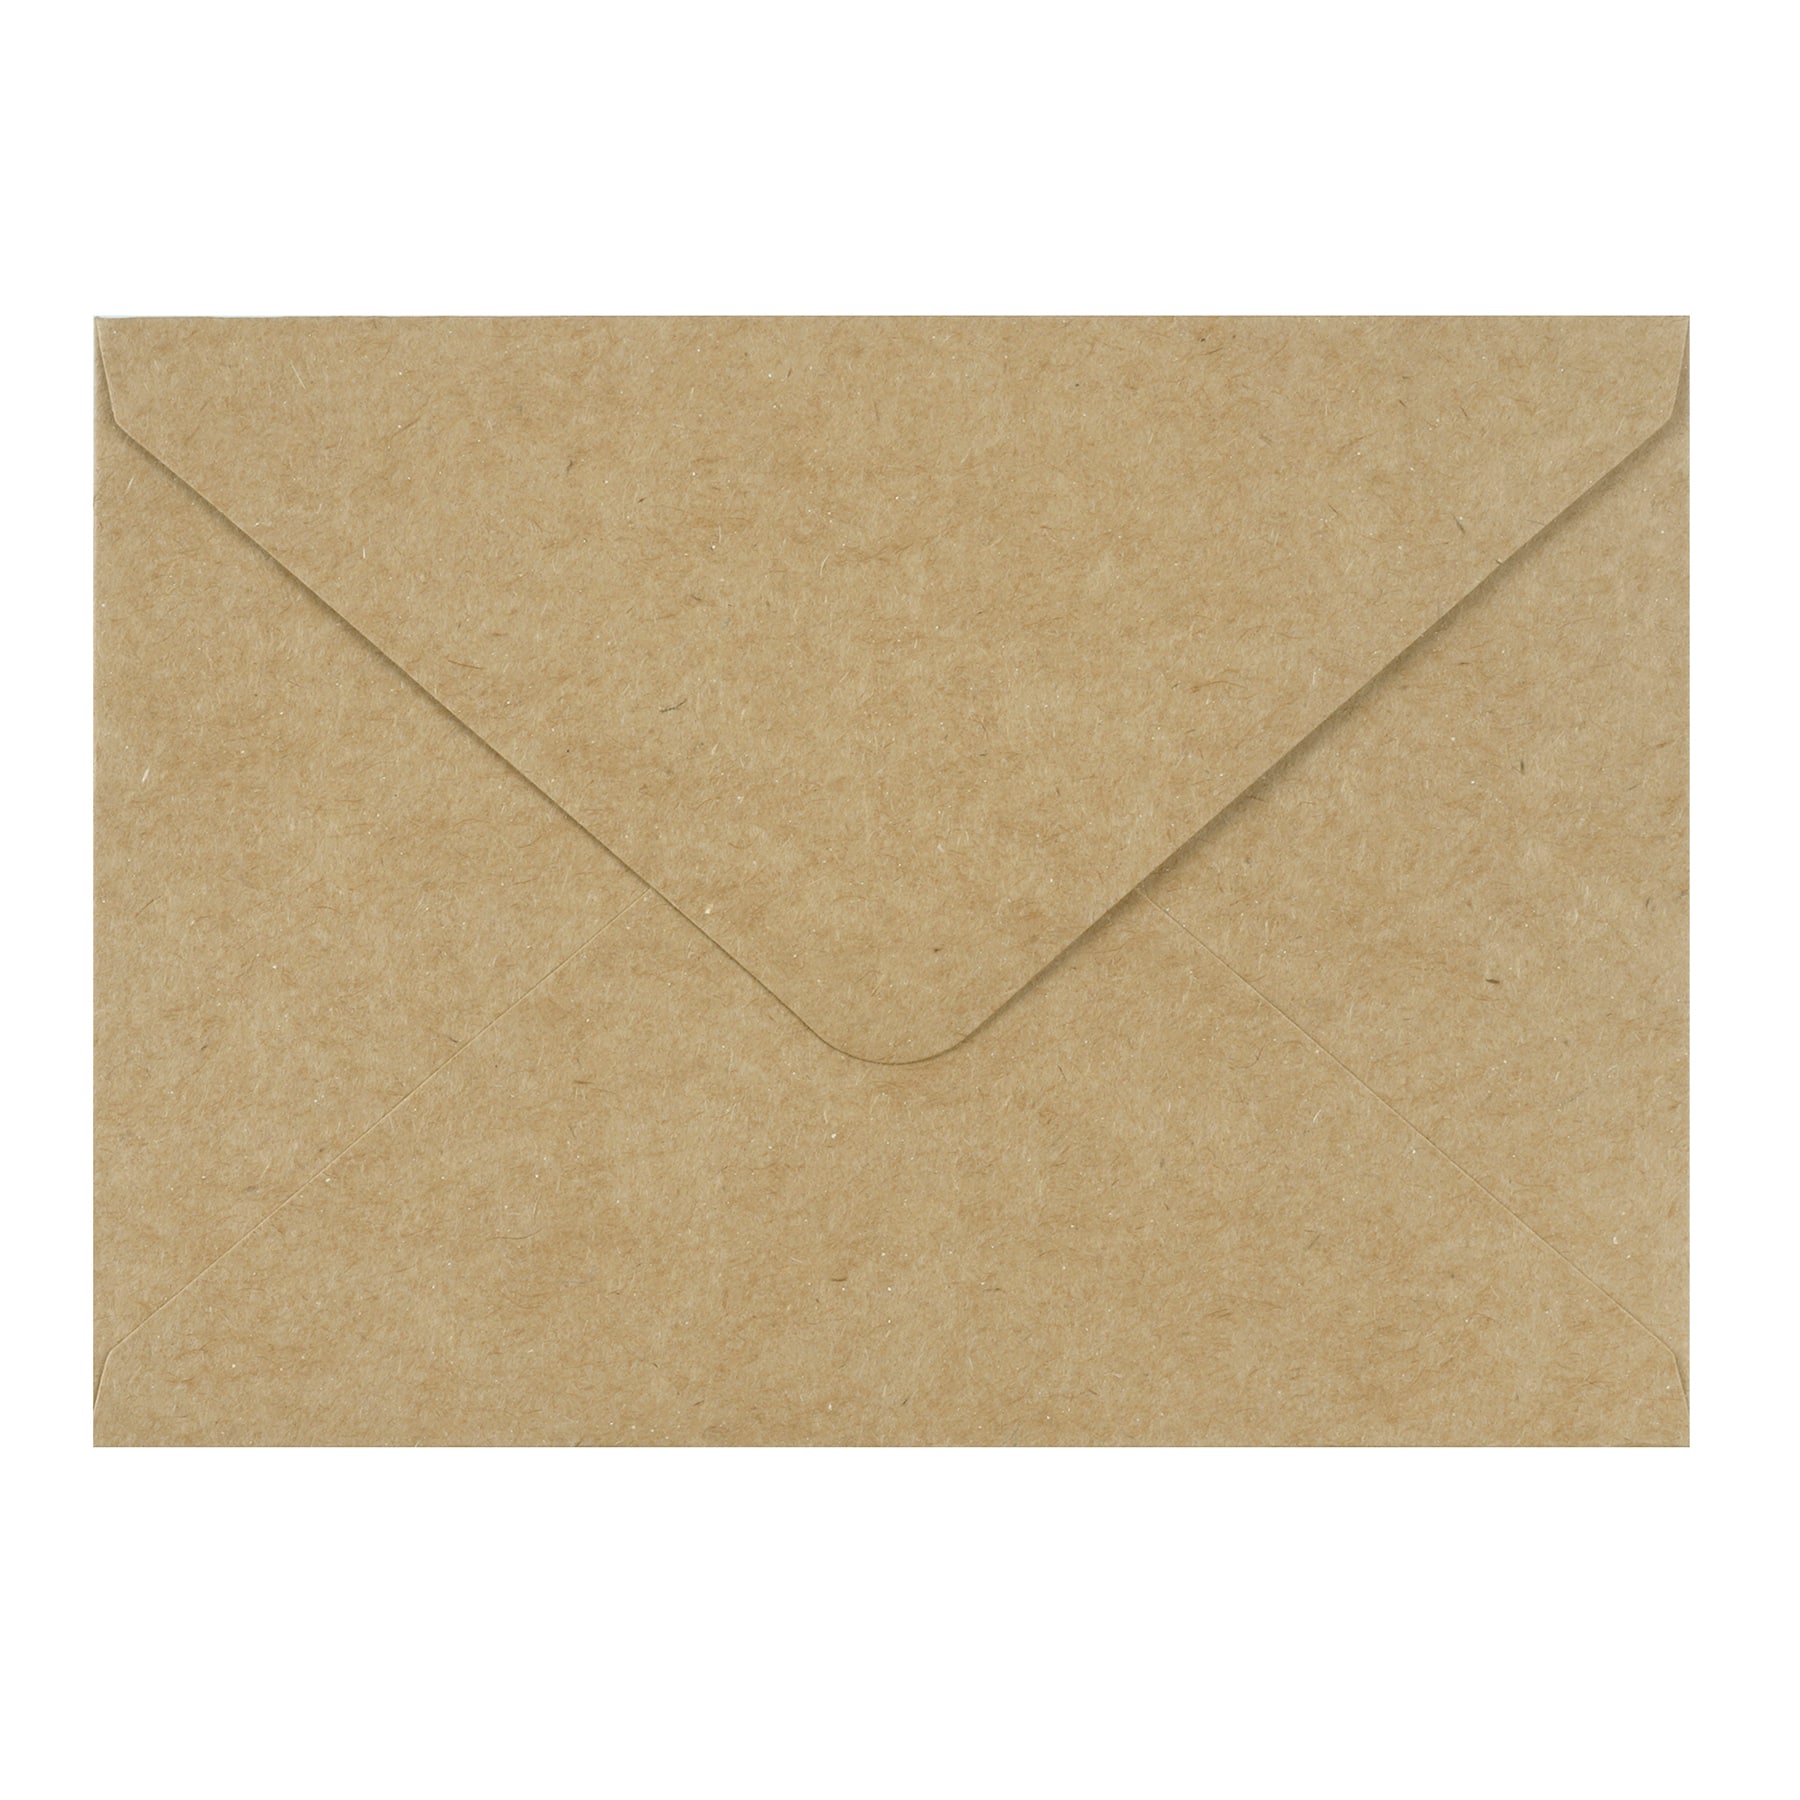 4 Bar Black Envelopes/ Pure Black Envelopes/Fit 7/8 X 3 1/2 Standard Cards  Blank Envelope Rsvp Envelope Set Of 12 - Yahoo Shopping